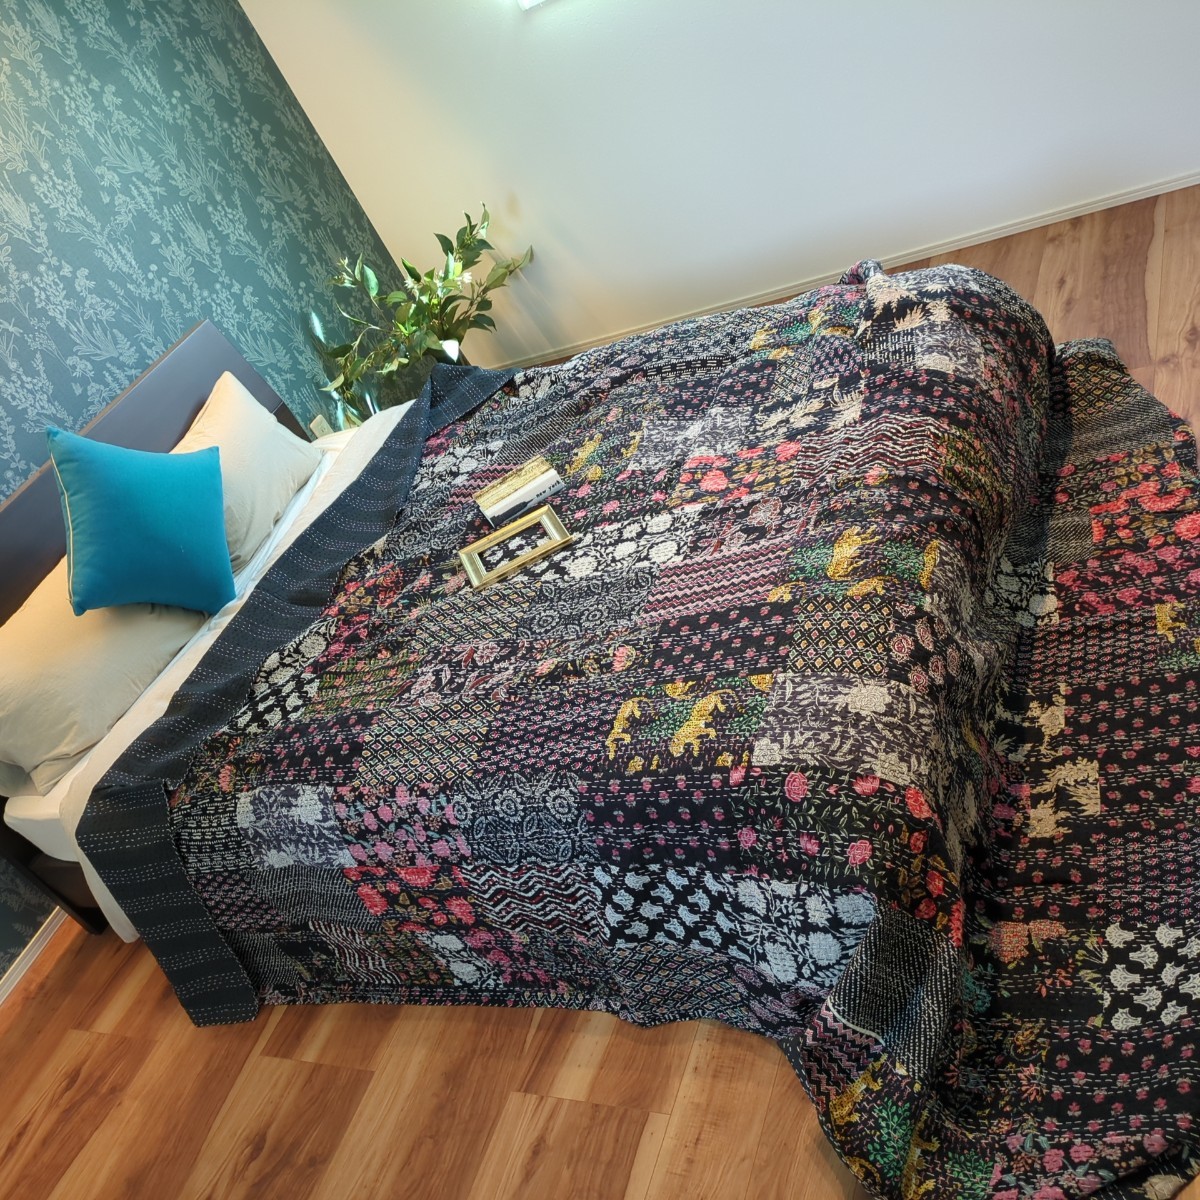 78 대형 칸타 퀼트 수제 블록 프린트 침대보 소파 커버 우아한 멀티 커버 패치워크 블랙, 수제 작품, 침구, 침대 덮개, 시트